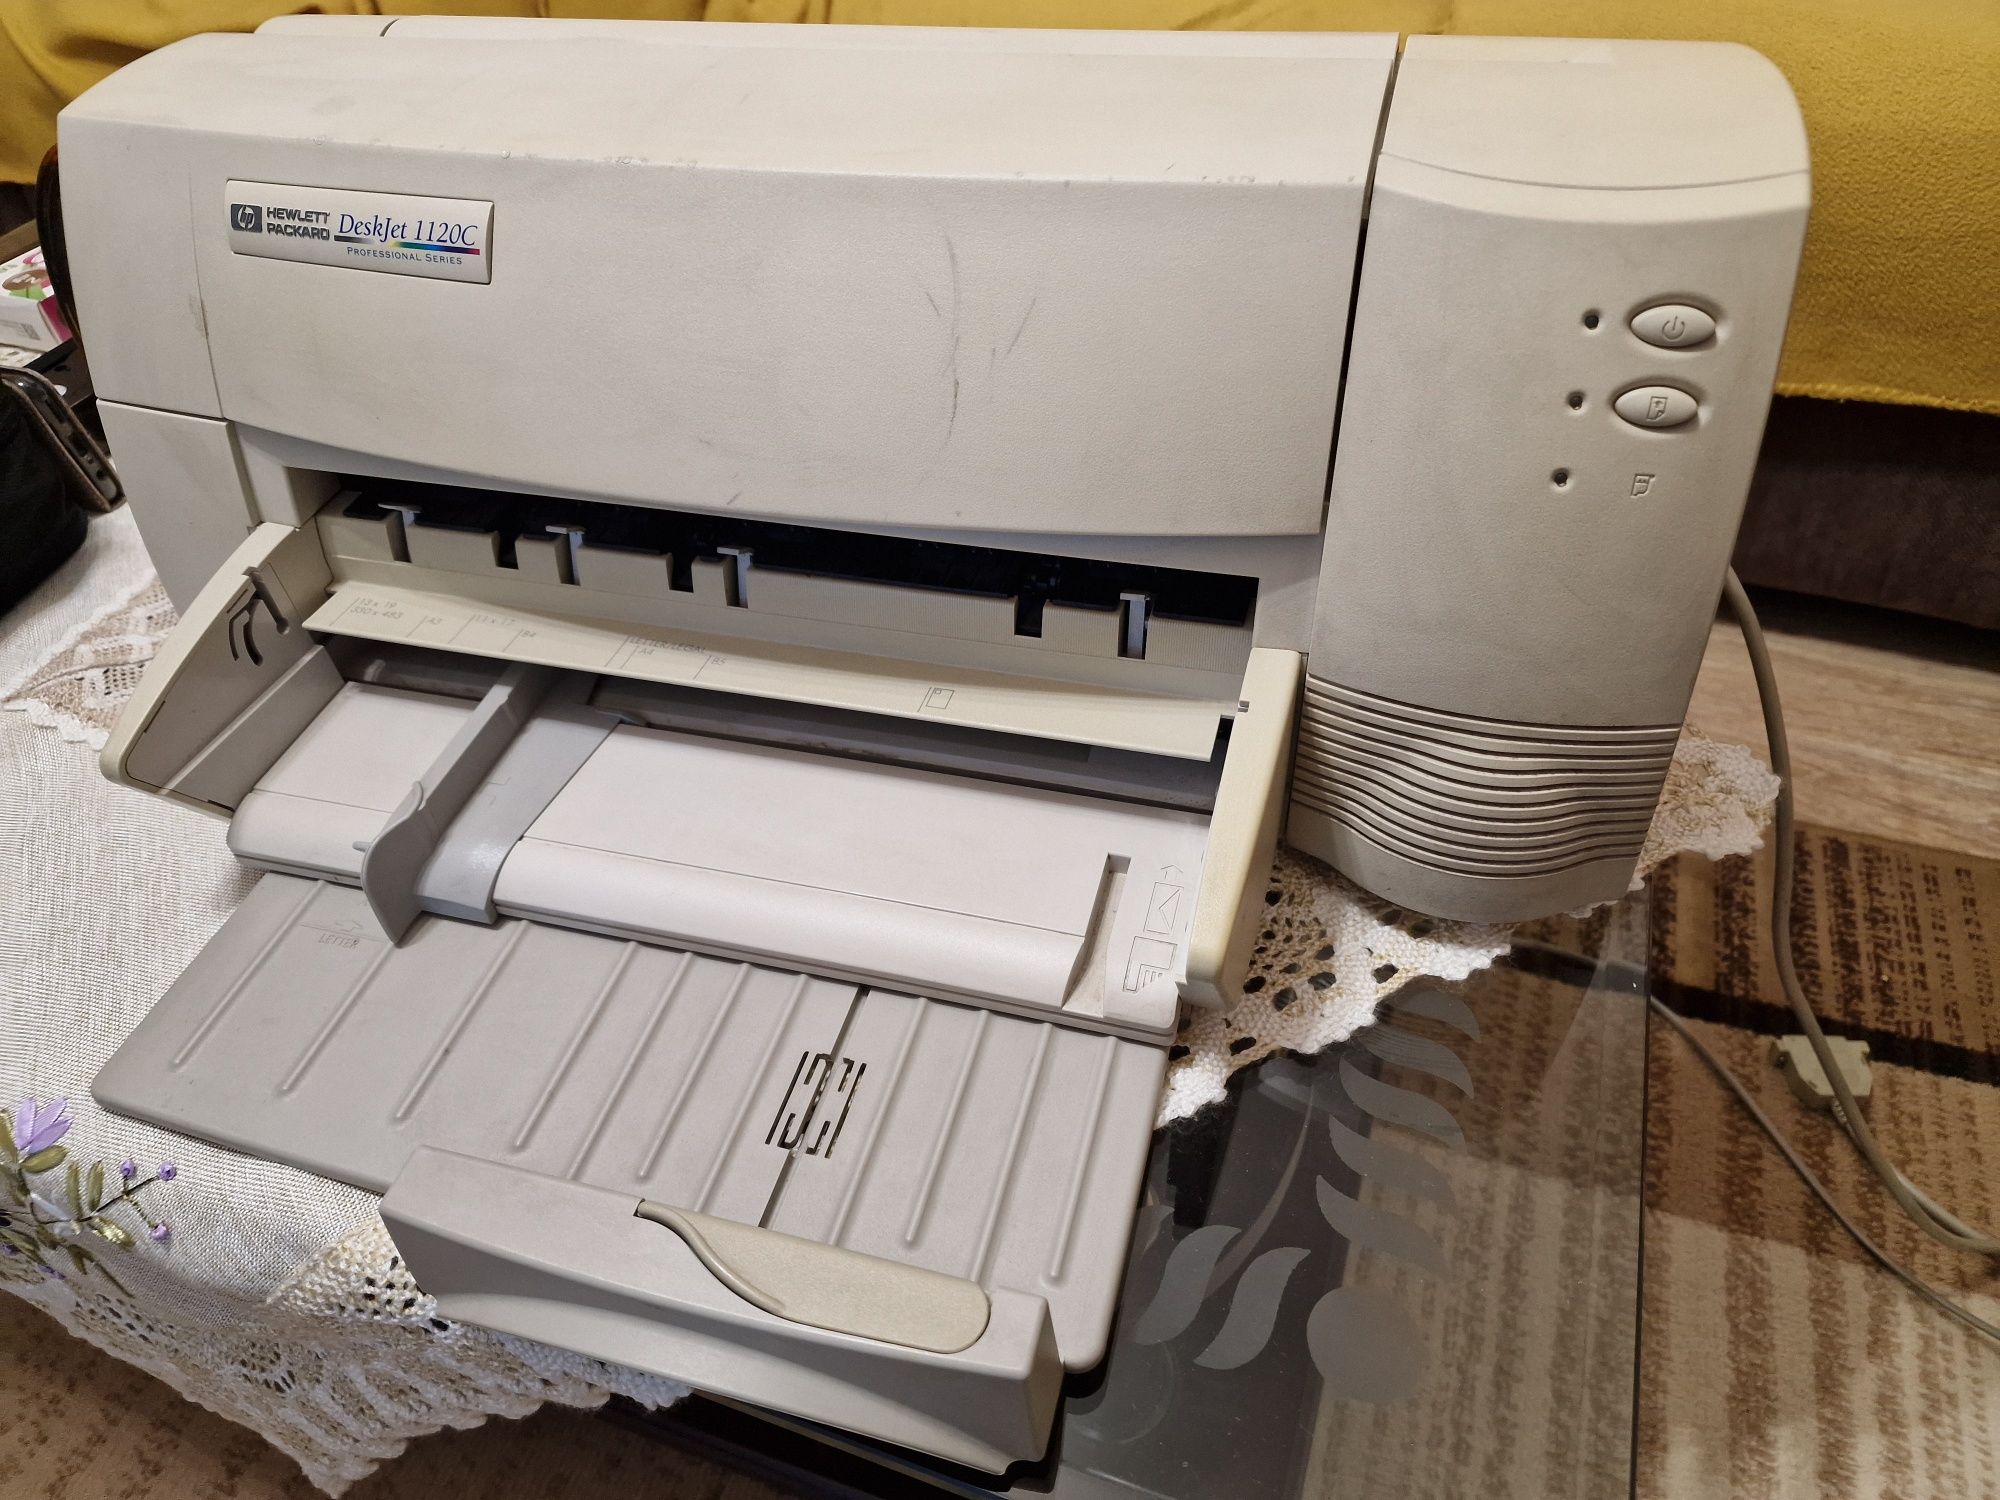 Imprimanta A3/A4 HP DeskJet 1120C